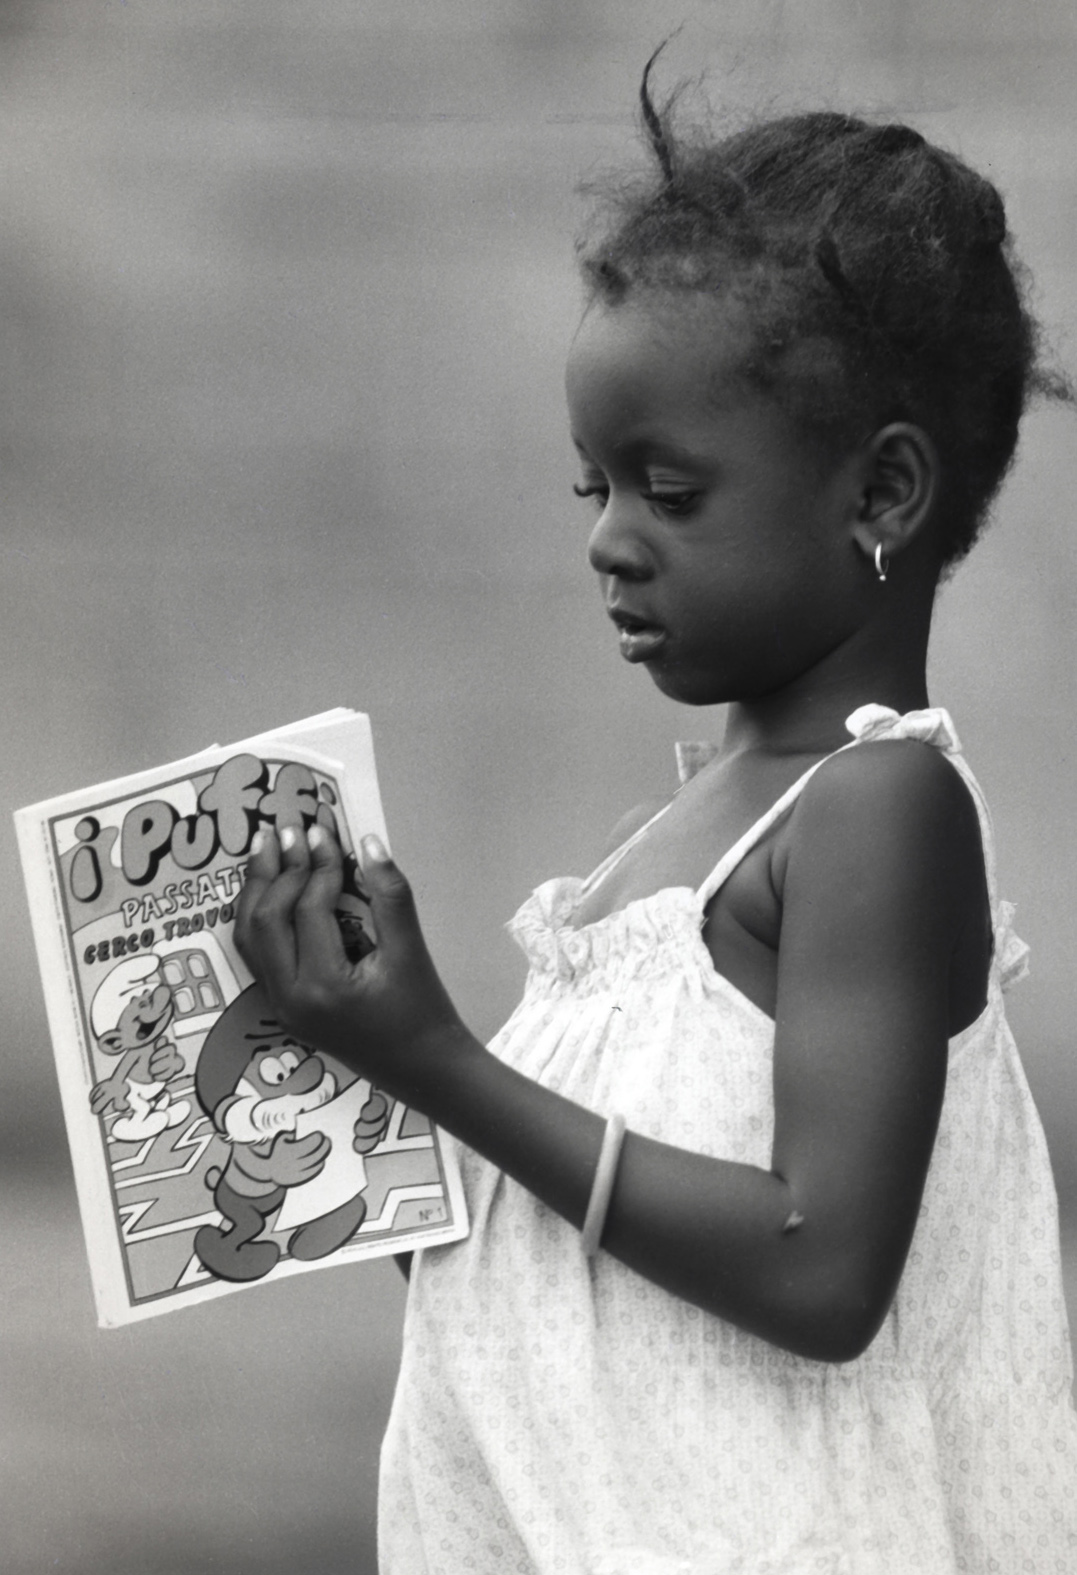 Castel Volturno, 1988 - Bambina africana con un fumetto dei puffi ed una mosca sul braccio